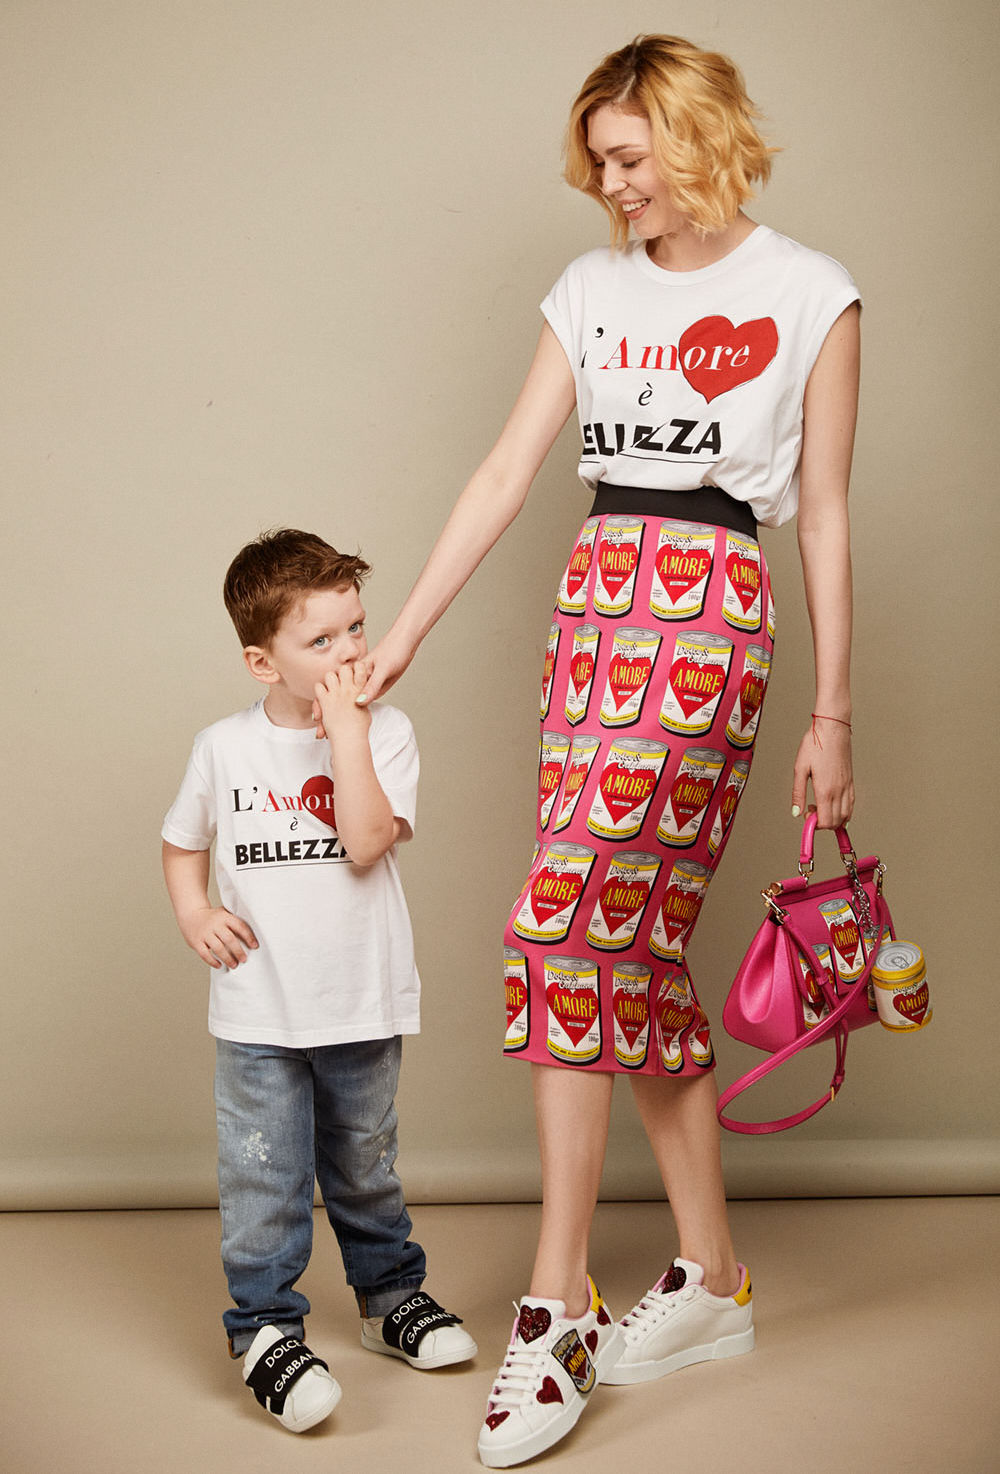 Катерина Любчик, Семейные правила стиля в спецпроекте Dolce & Gabbana ко Дню матери.